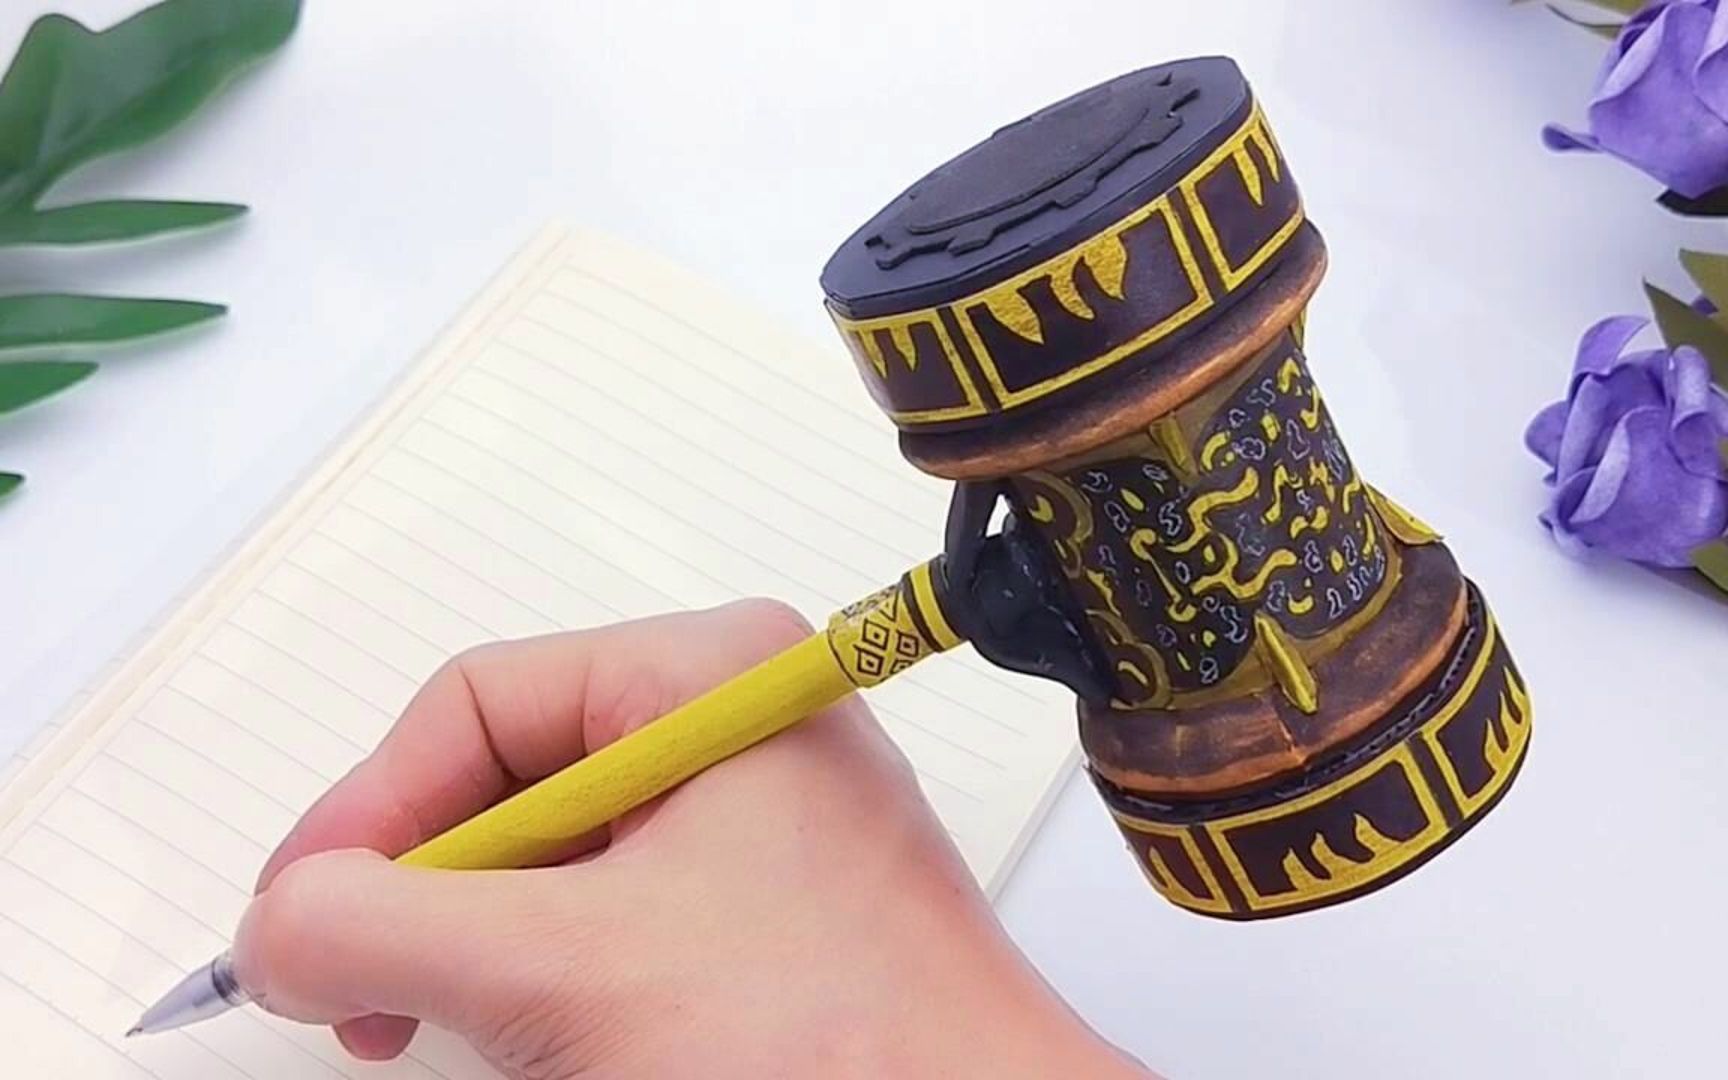 活动作品自制一把斗罗大陆昊天锤笔用它写作业是什么体验感觉很帅气